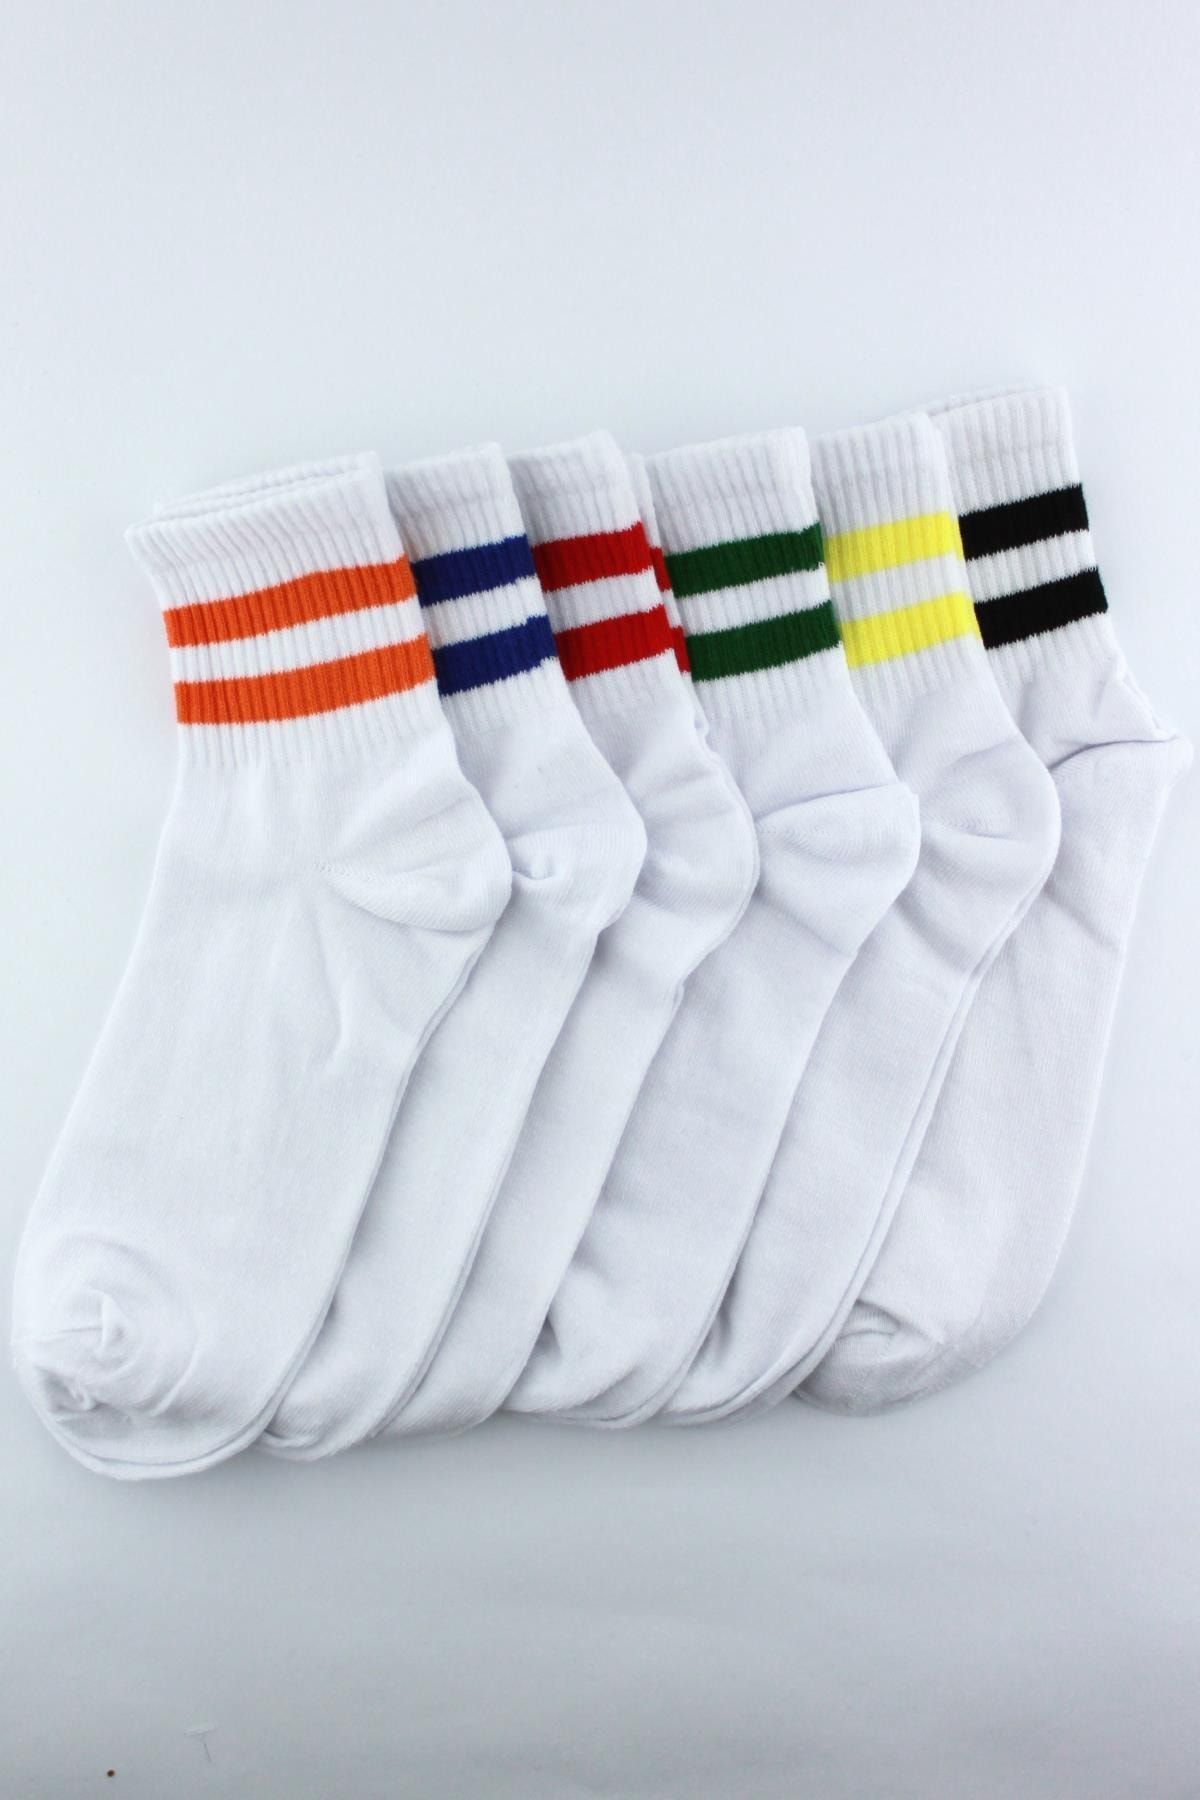 Trick or Treat Beyaz 6'lı Paket Renkli Çizgili Pamuklu Yarım Konç Erkek Kadın Unisex Çorap